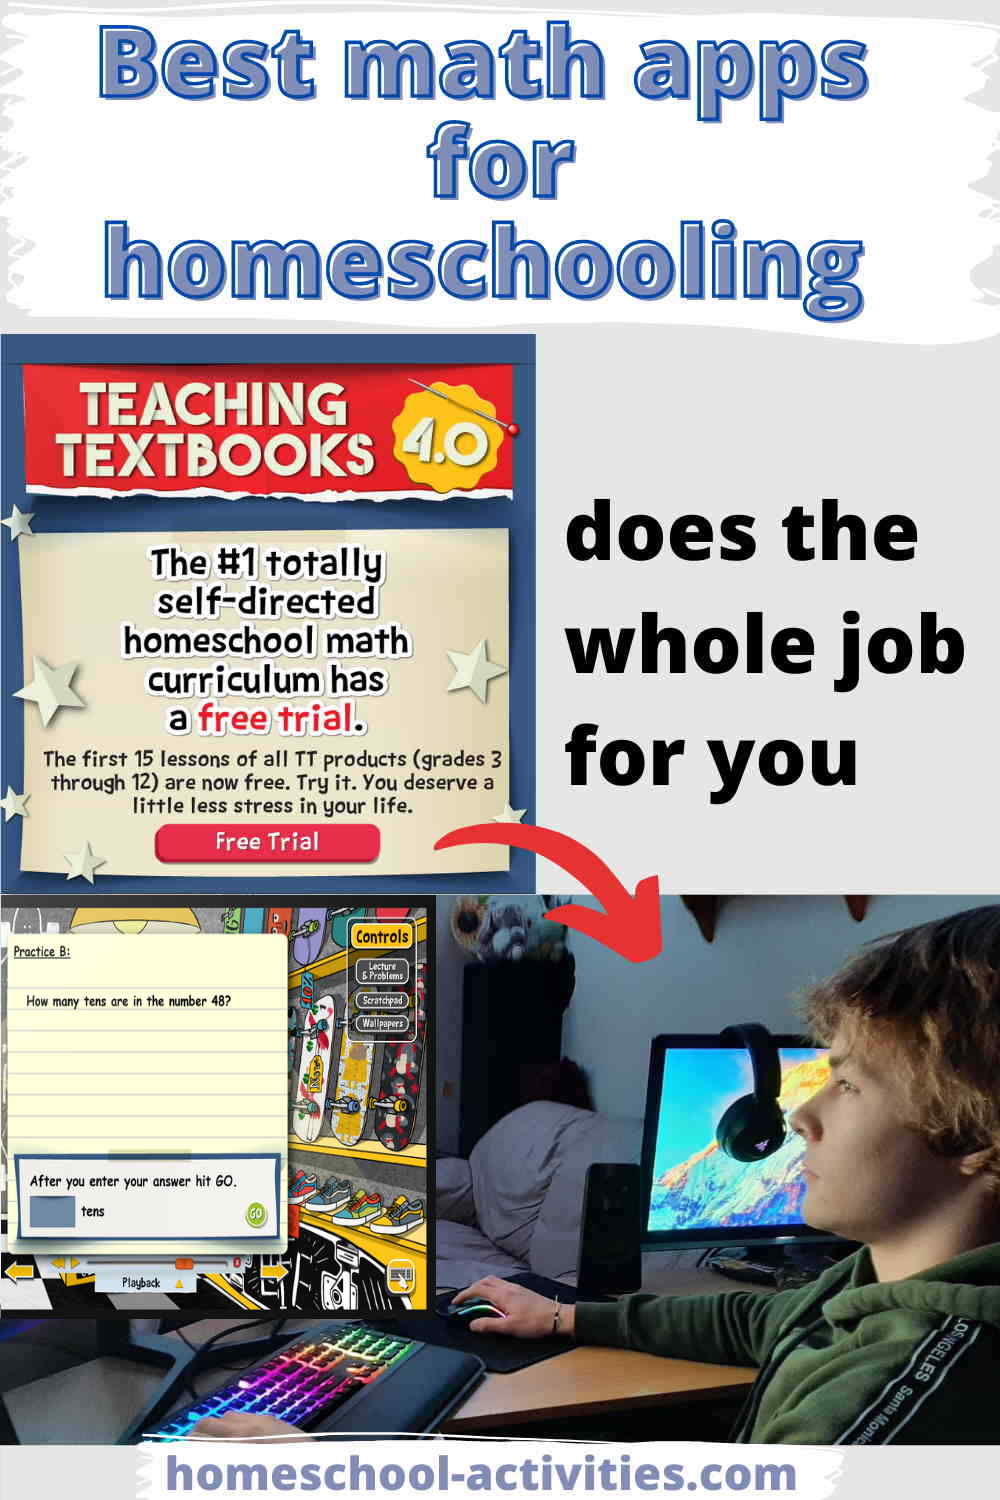 Teaching Textbooks homeschool math curriculum app